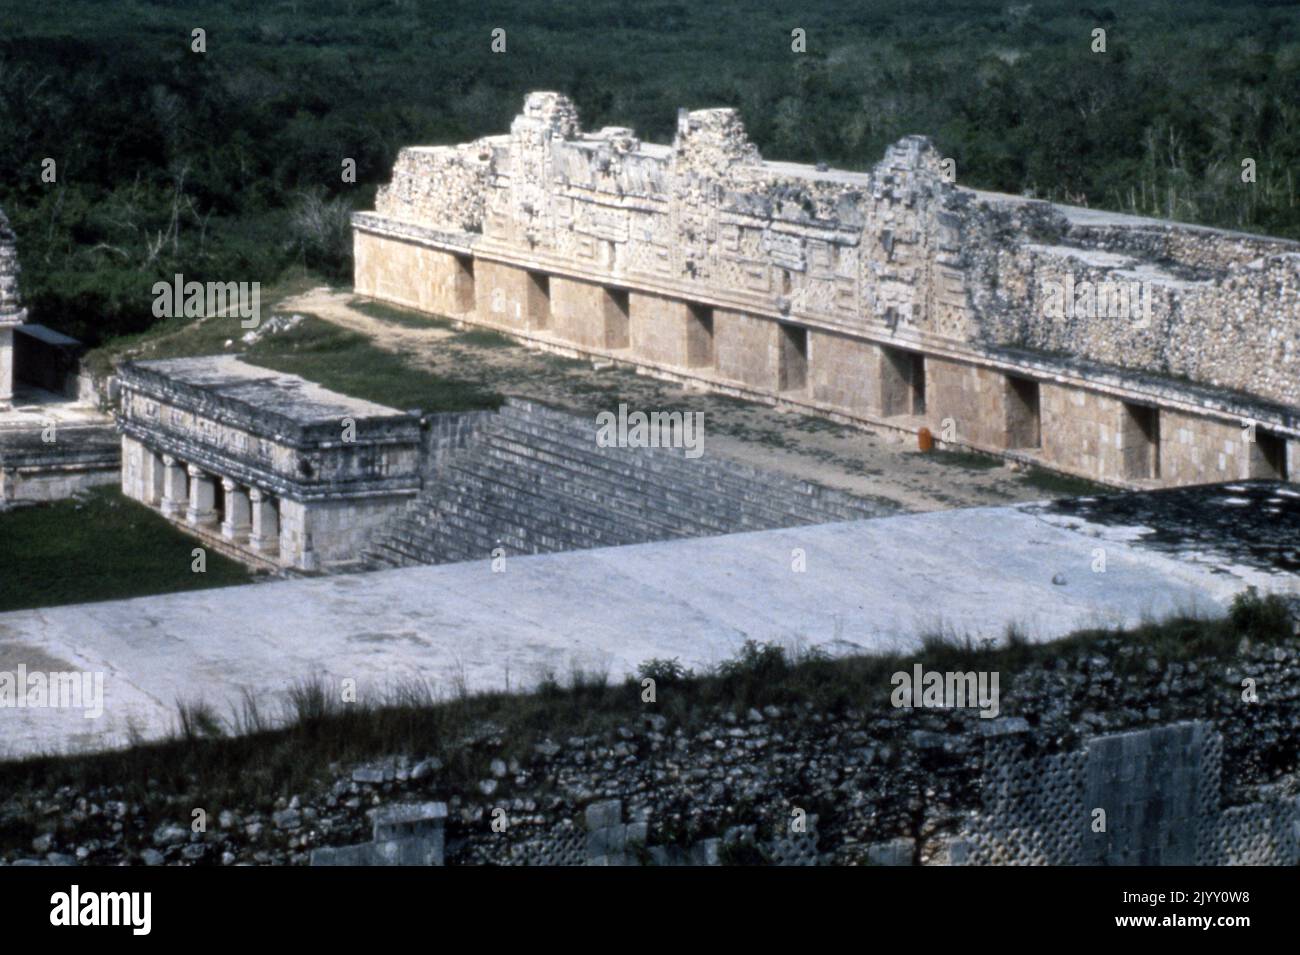 El convento de Uxmal, una antigua ciudad maya de la época clásica en el México actual. Considerado uno de los sitios arqueológicos más importantes de la cultura maya. El edificio es típico del estilo Puuc, con paredes bajas suaves que se abren sobre frisos ornamentados. La mayor parte de la construcción mayor de la ciudad tuvo lugar mientras que Uxmal era la capital de un estado maya del Clásico Tardío alrededor del año 850-925 DC. Después de alrededor de 1000 dC, invasores toltecas tomaron el control. El Cuadrángulo del Convento (un apodo dado a él por los españoles; era un palacio del gobierno) es el mejor de los varios cuadrángulos finos de edificios largos de Uxmal. Tiene elabo Foto de stock